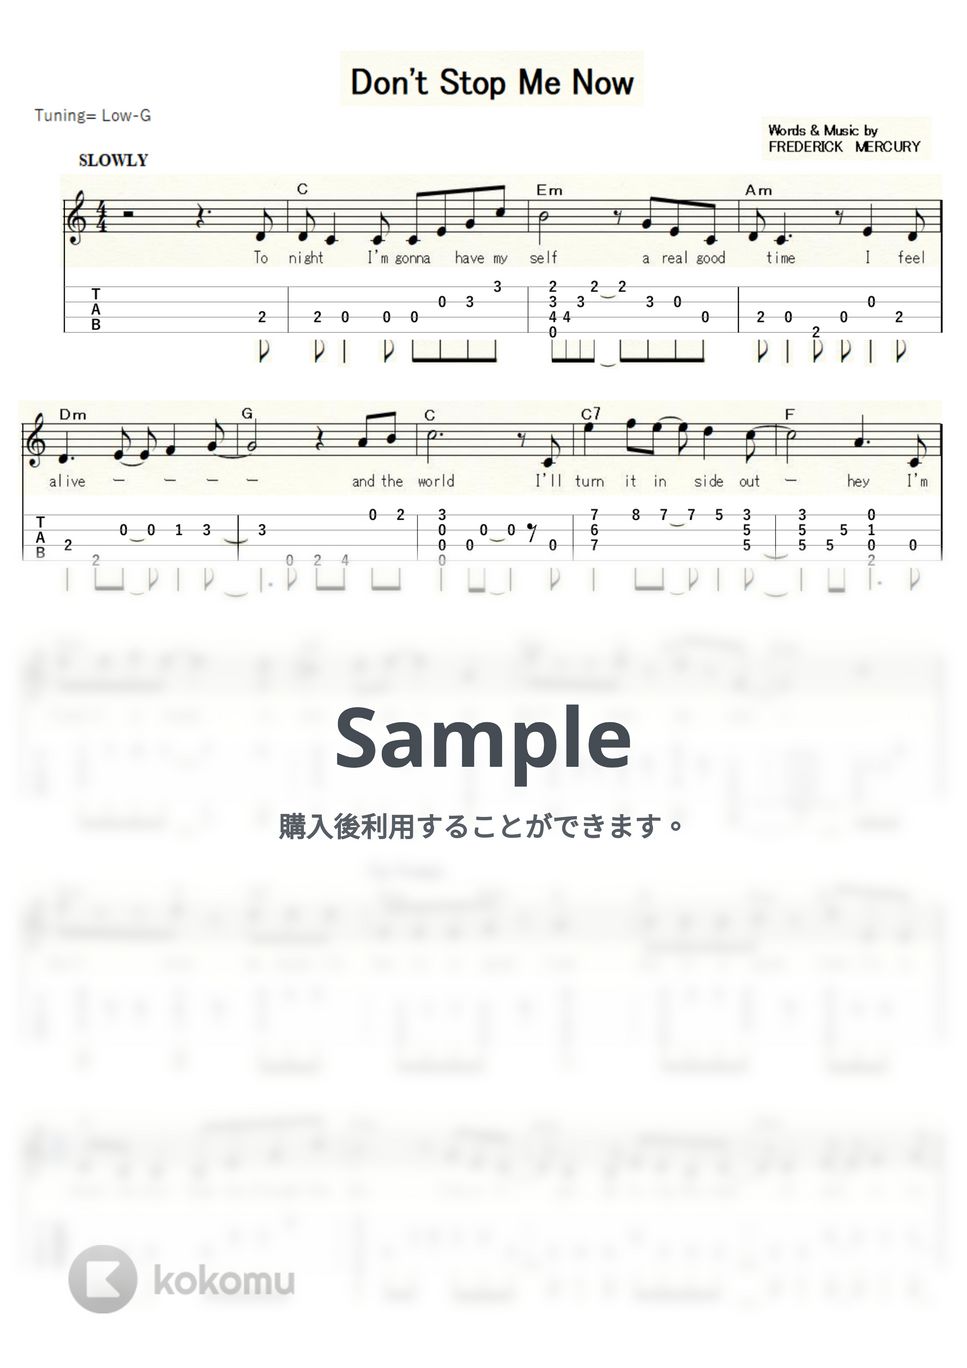 Queen - Don't Stop Me Now (ｳｸﾚﾚｿﾛ/Low-G/中級) by ukulelepapa